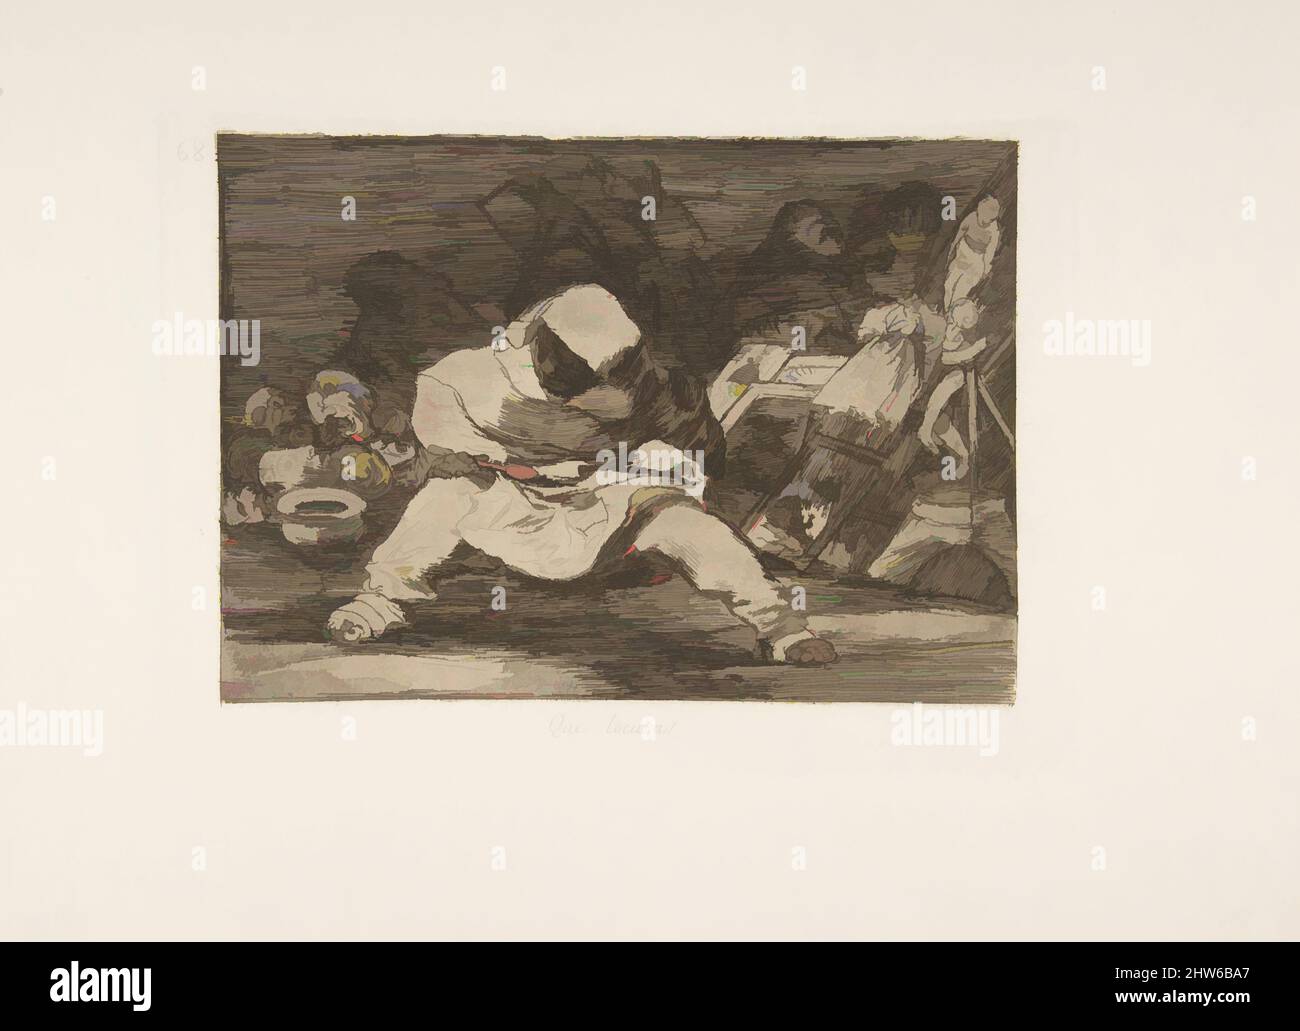 Arte ispirata dal piatto 68 da 'i disastri della guerra' (Los Desastres de la Guerra): 'Che follia!.' (Que locura!), dopo il 1814–15 (pubblicato nel 1863), acquaforte, lavis e burin, piatto: 8 7/16 x 6 3/8 pollici (21,4 x 16,2 cm), Prints, Goya (Francisco de Goya y Lucientes) (spagnolo, Fuendetodos, opere classiche modernizzate da Artotop con un tuffo di modernità. Forme, colore e valore, impatto visivo accattivante sulle emozioni artistiche attraverso la libertà delle opere d'arte in modo contemporaneo. Un messaggio senza tempo che persegue una nuova direzione selvaggiamente creativa. Artisti che si rivolgono al supporto digitale e creano l'NFT Artotop Foto Stock